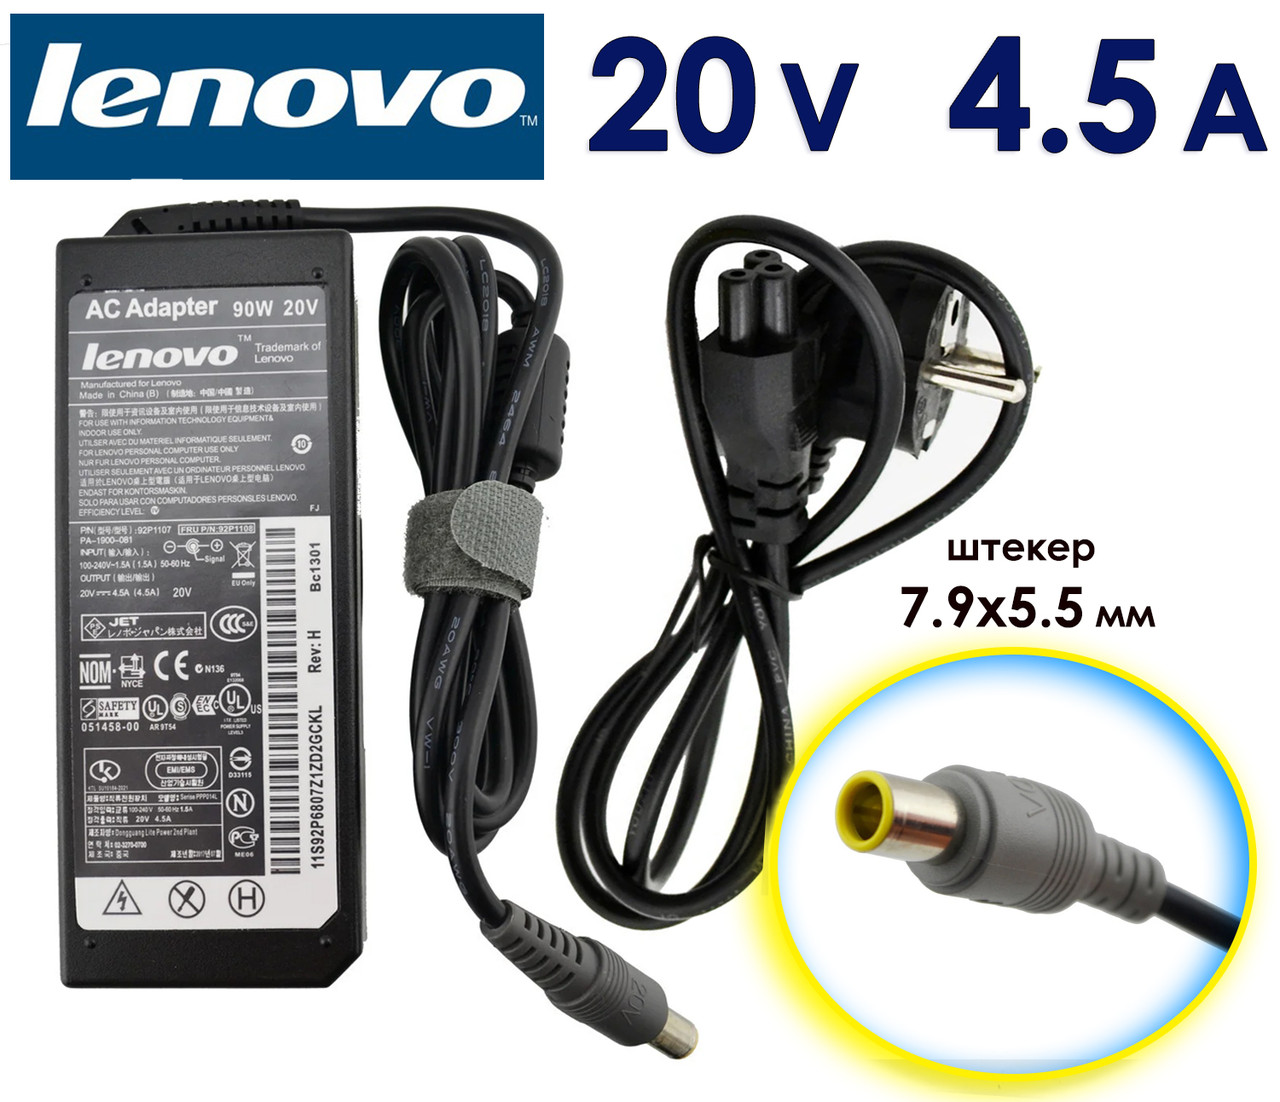 Зарядний пристрій Lenovo V580c 20V 4.5 A 90w 7.9x5.5 (8.0 pin) Блок живлення для ноутбука, зарядне, зарядка, адаптер